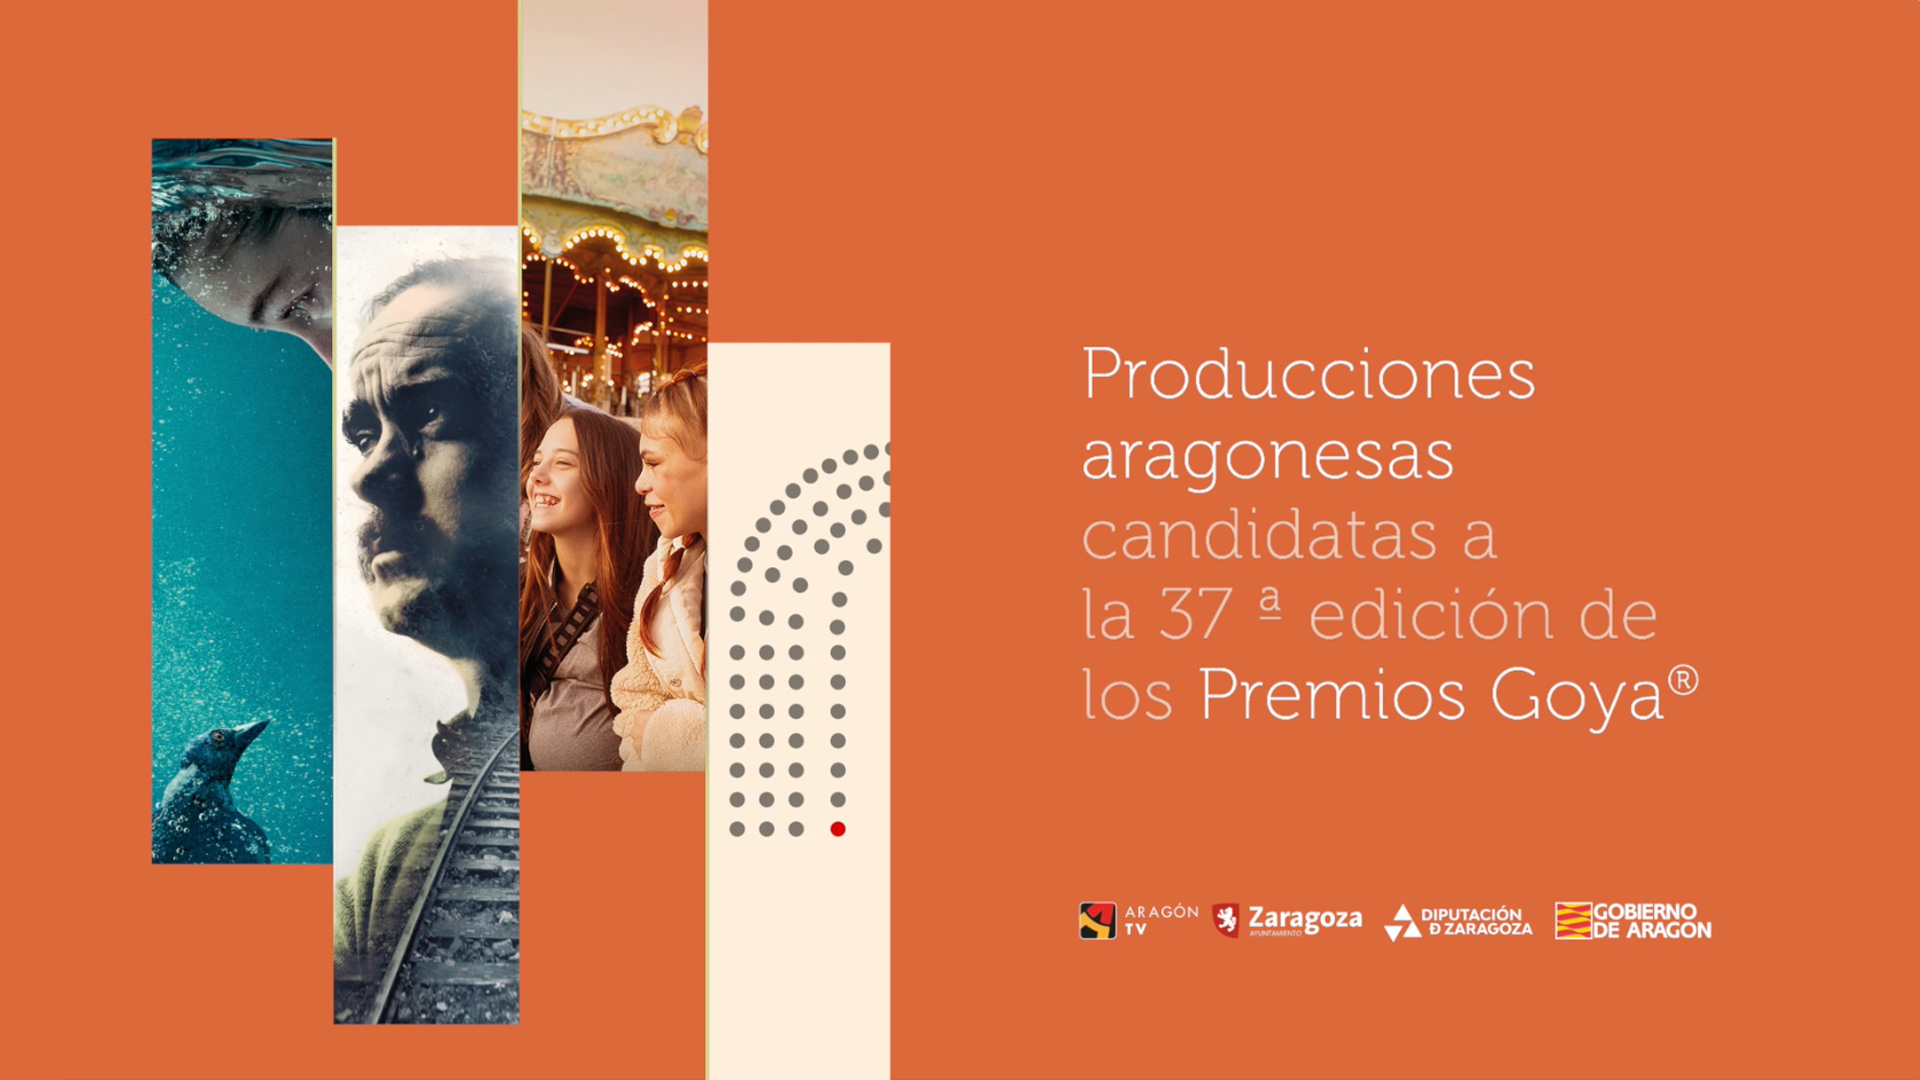 Producciones aragonesas candidatas a la 37 edición de los Premios Goya